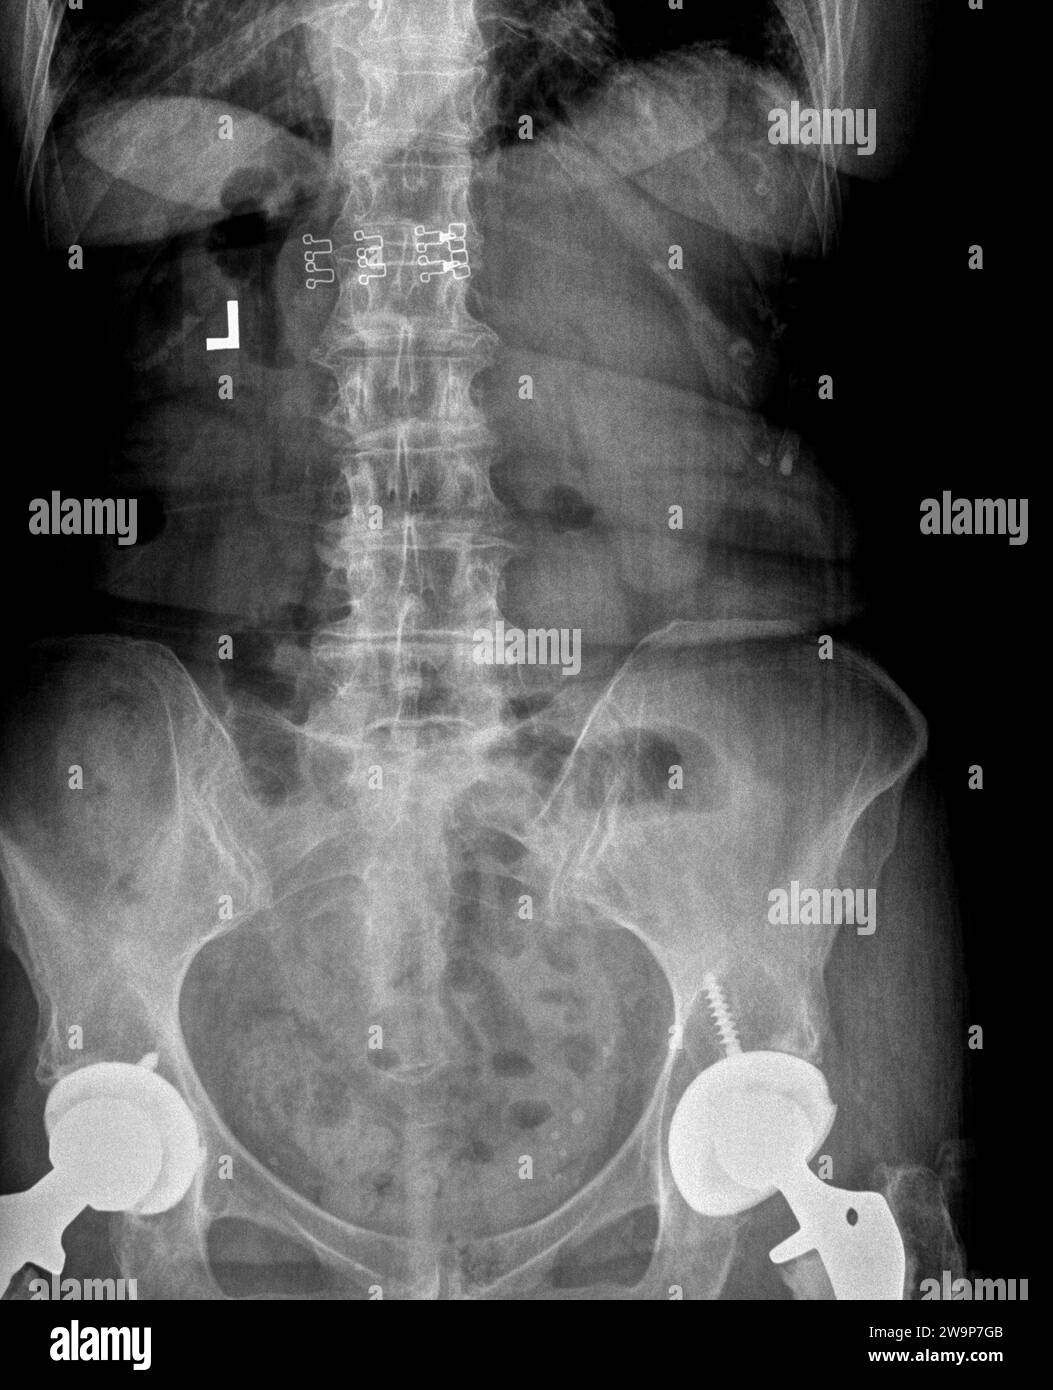 Pellicola radiografica o radiografia di una colonna lombare, pelvi e anca. Vista anteriore posteriore AP che mostra un intervento chirurgico bilaterale di sostituzione dell'anca con viti in titanio Foto Stock